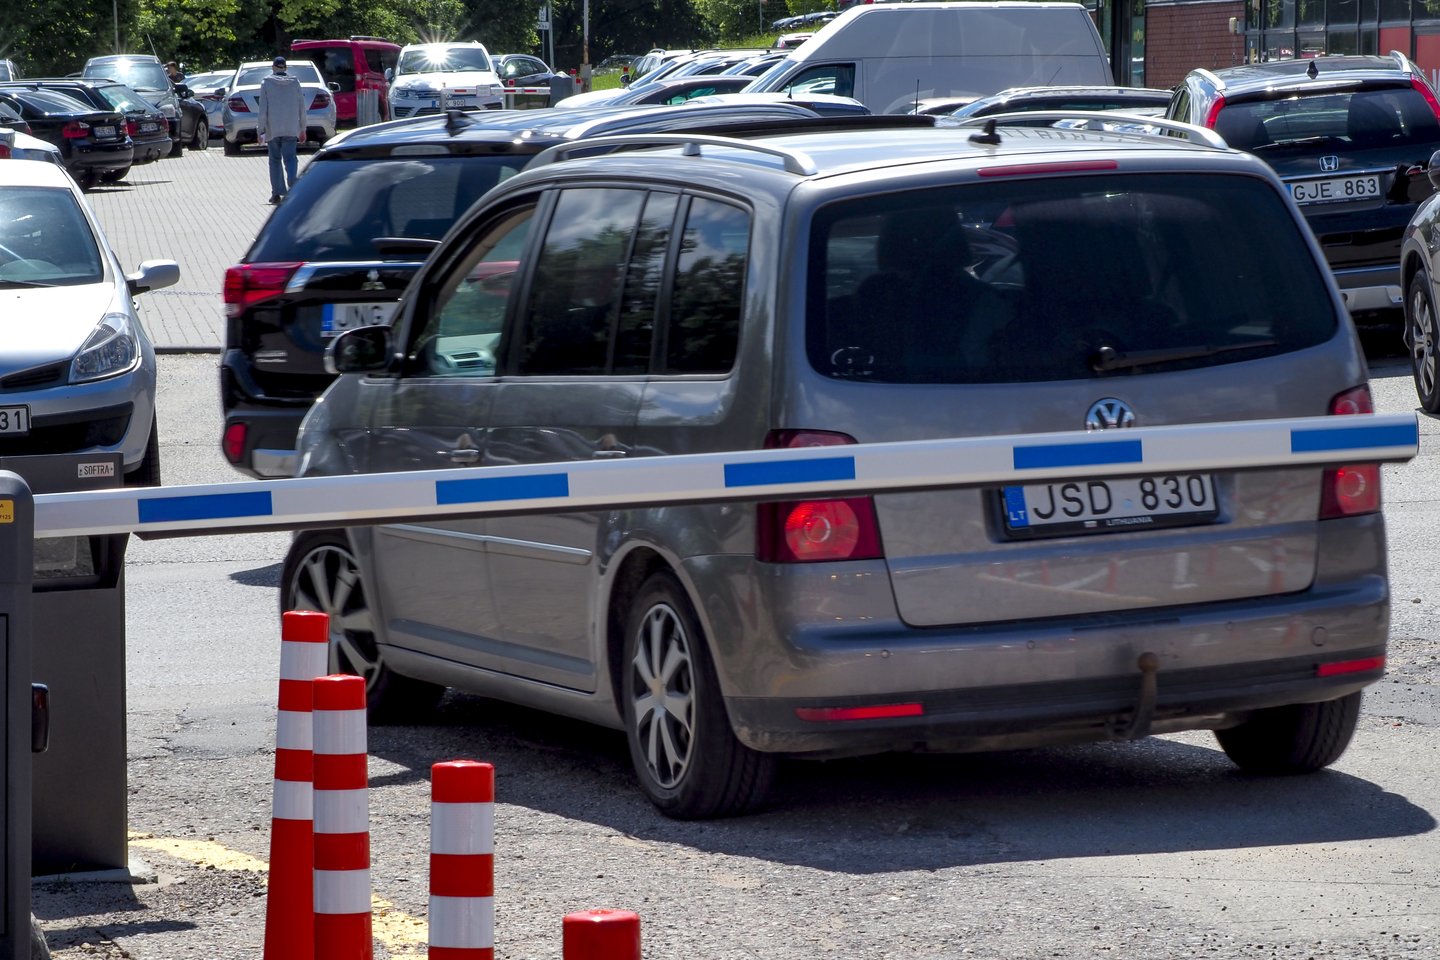 Nuo sausio 16 d. Vilniuje įsigalioja automobilių parkavimo pokyčiai – naujai apmokestinamos automobilių stovėjimo vietos.<br>V.Ščiavinsko nuotr.